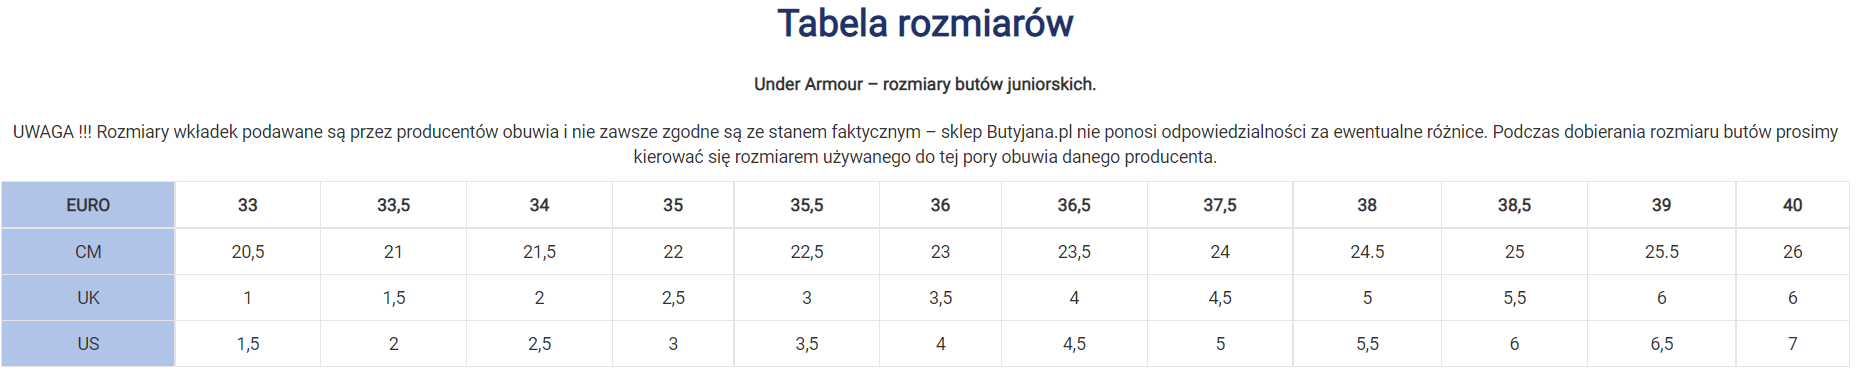 Under Armour tabela rozmiarów (rozmiarówka) – Blog Butyjana.pl